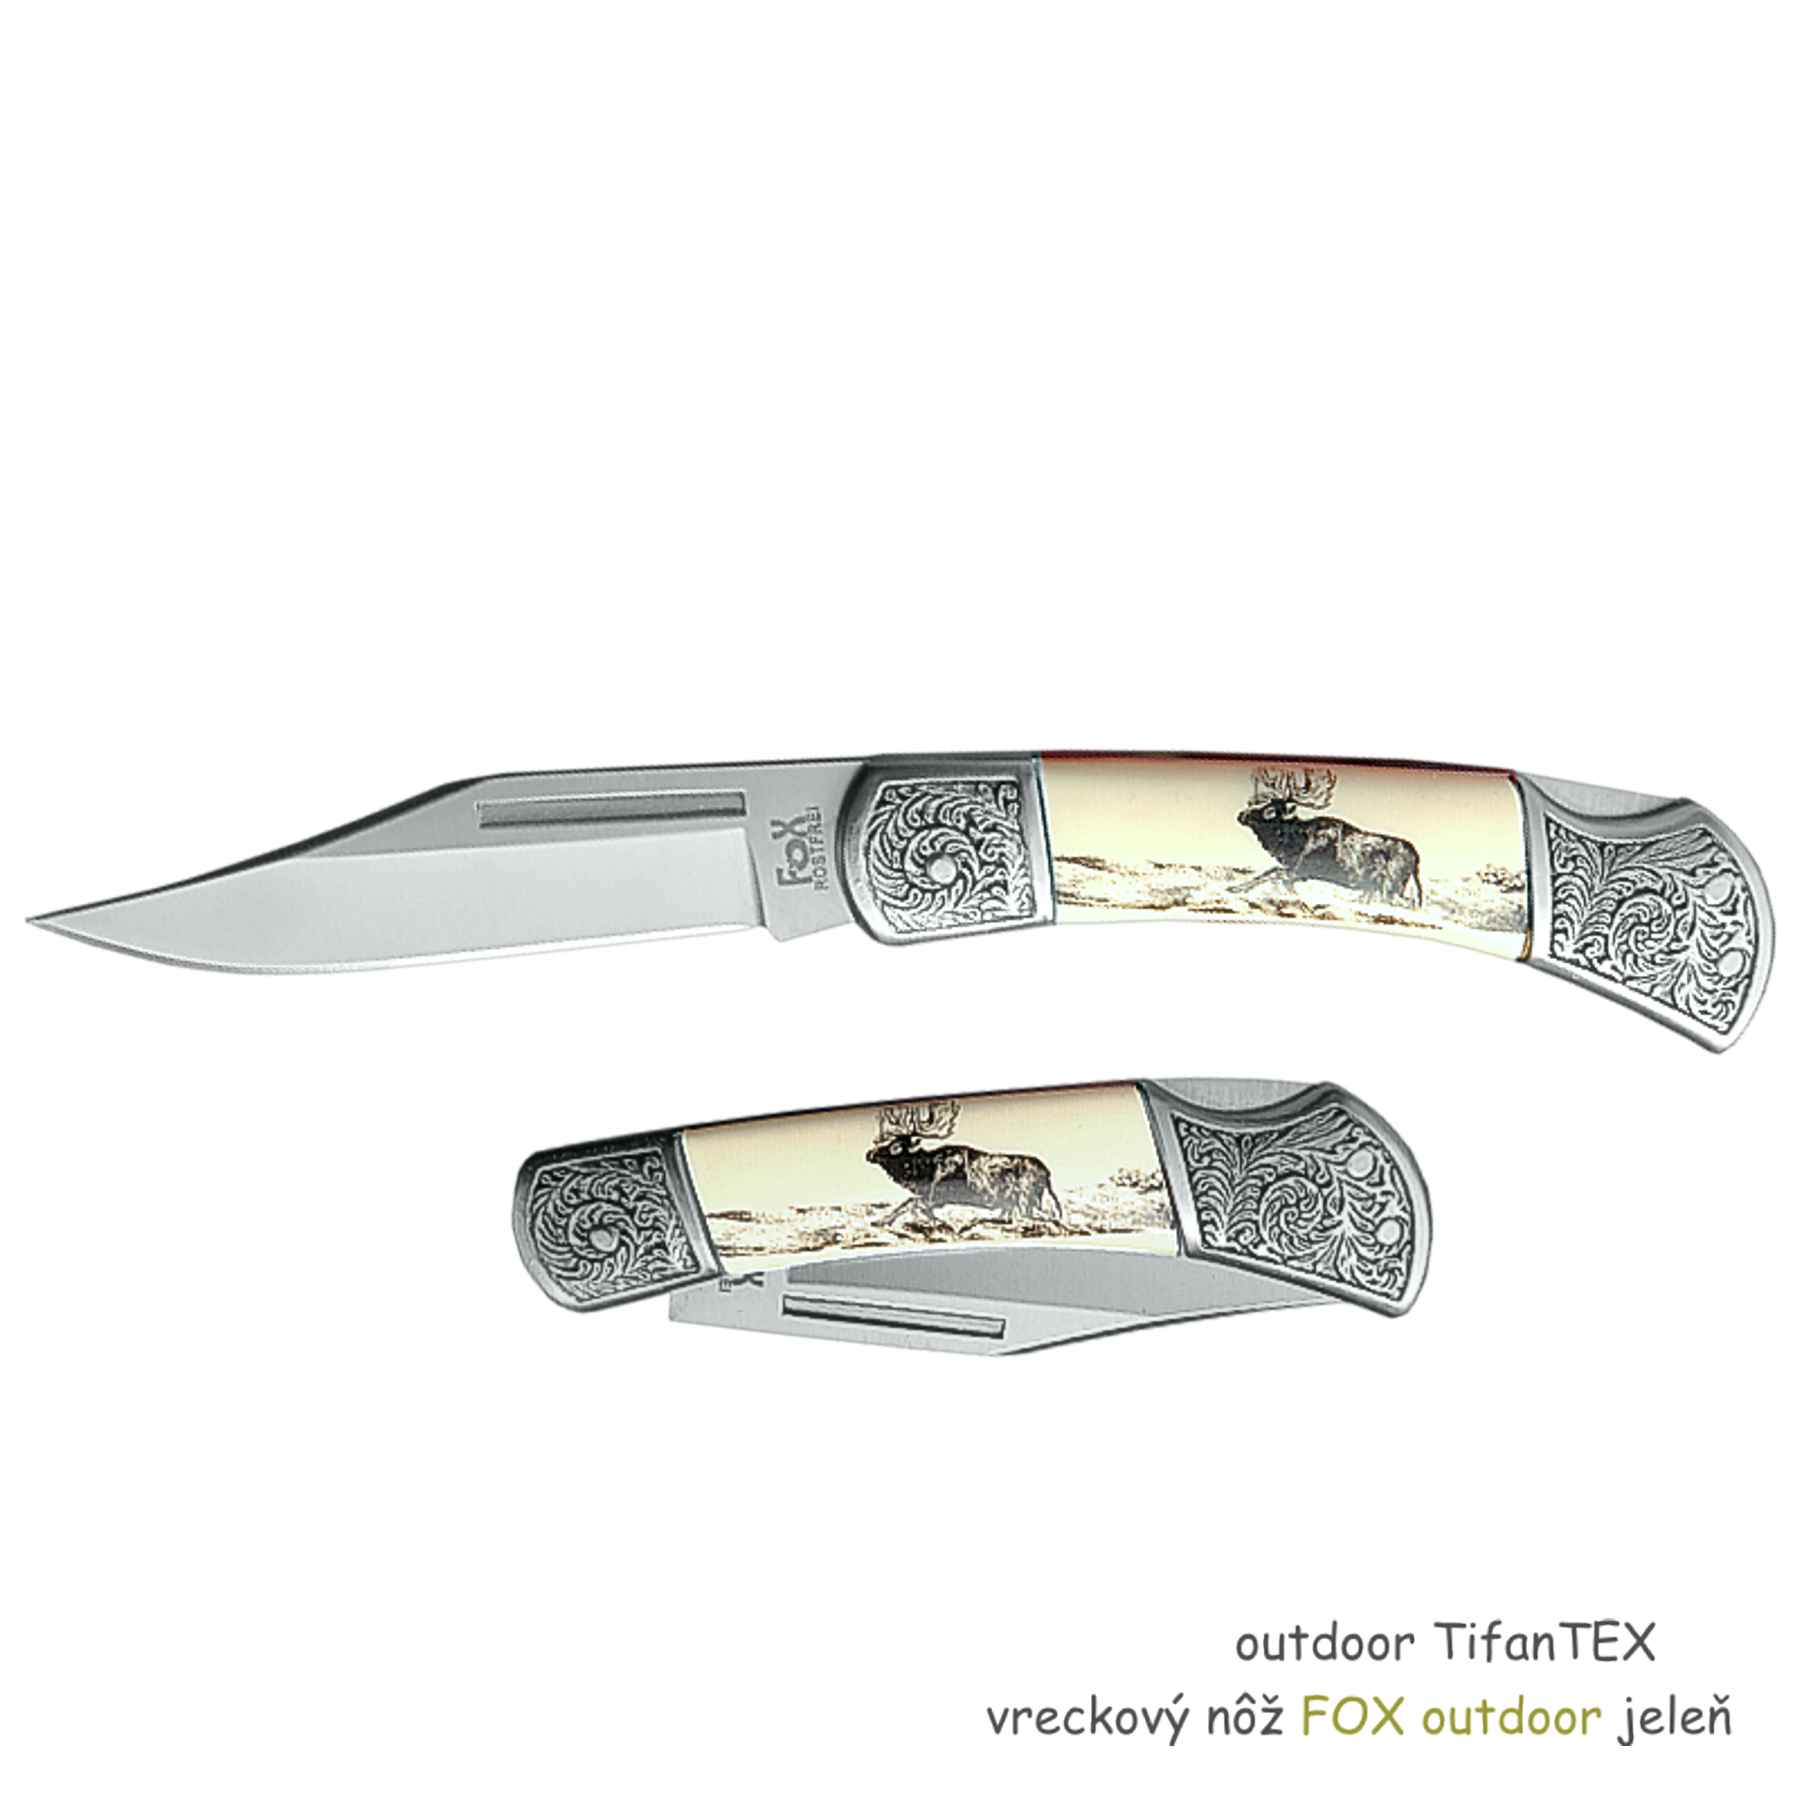 vreckový nôž FOX outdoor jeleň